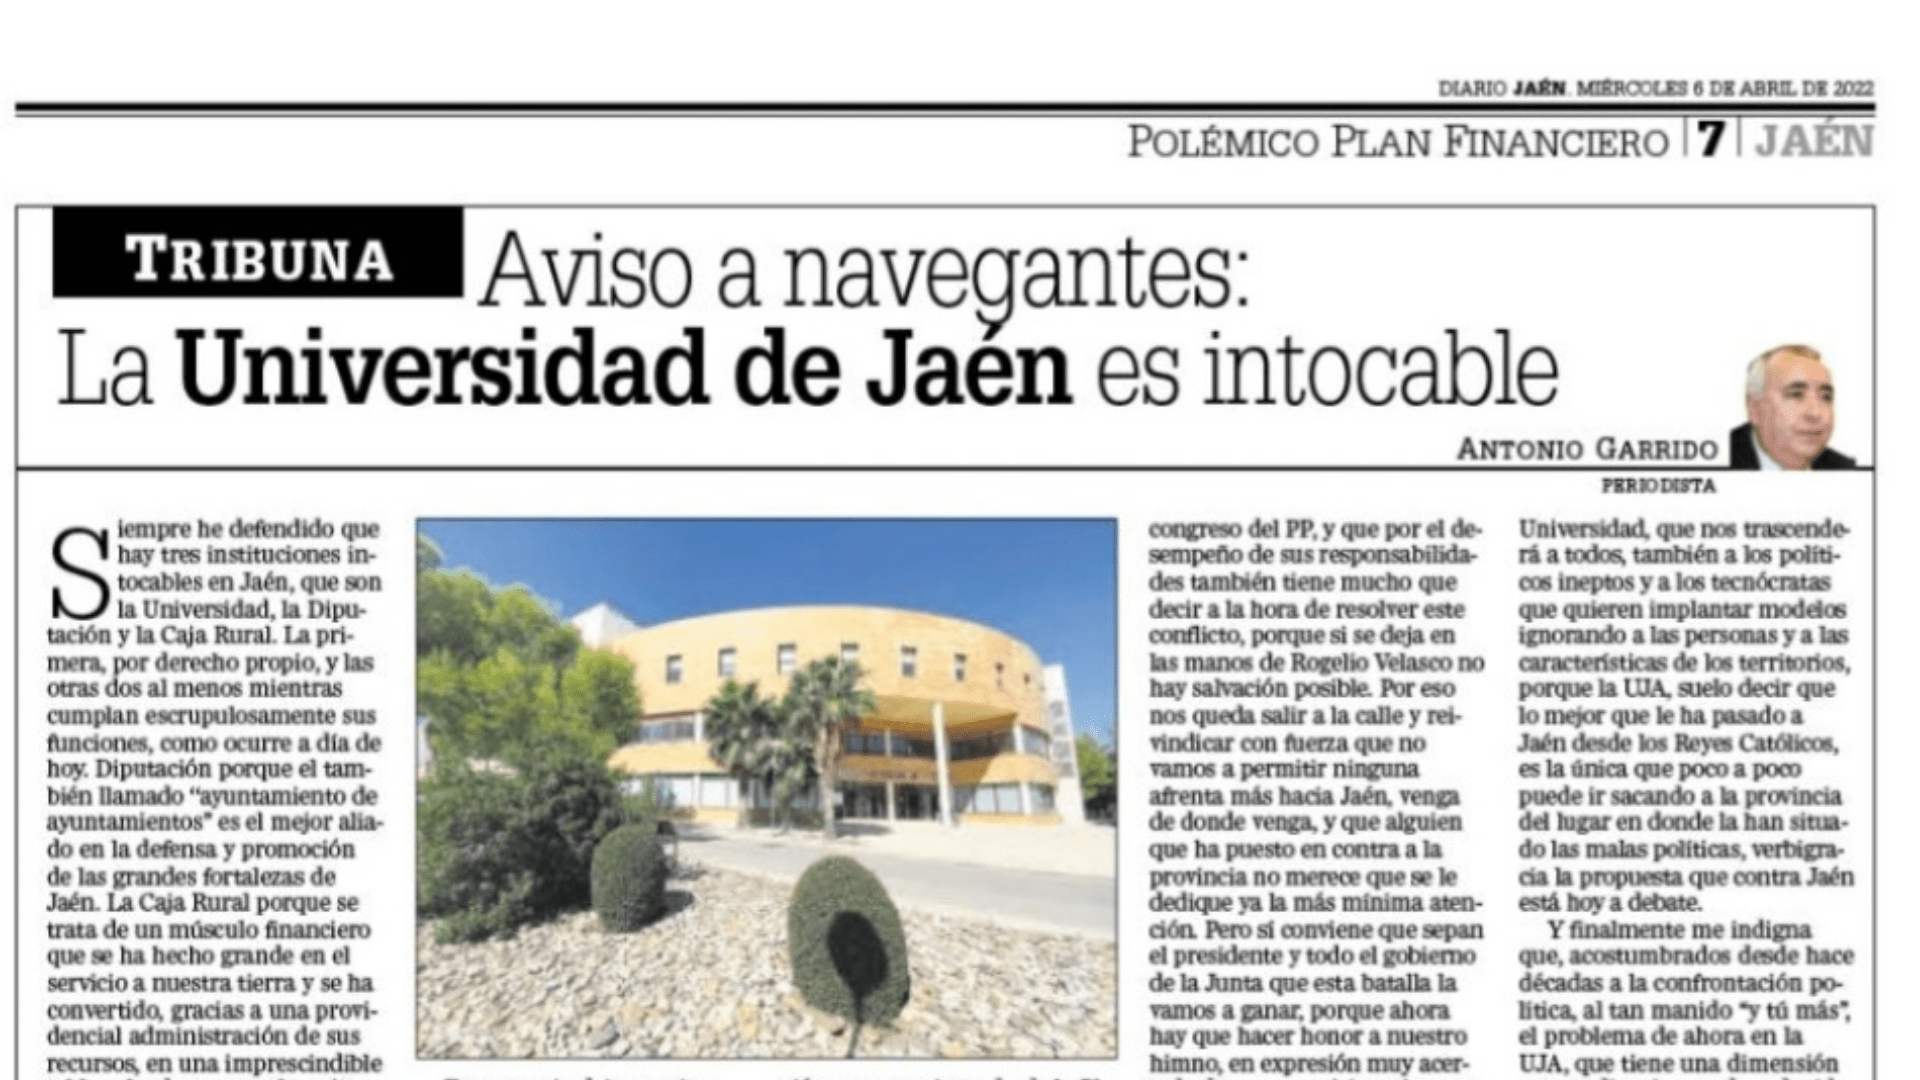 Aviso a navegantes: La Universidad de Jaén es intocable